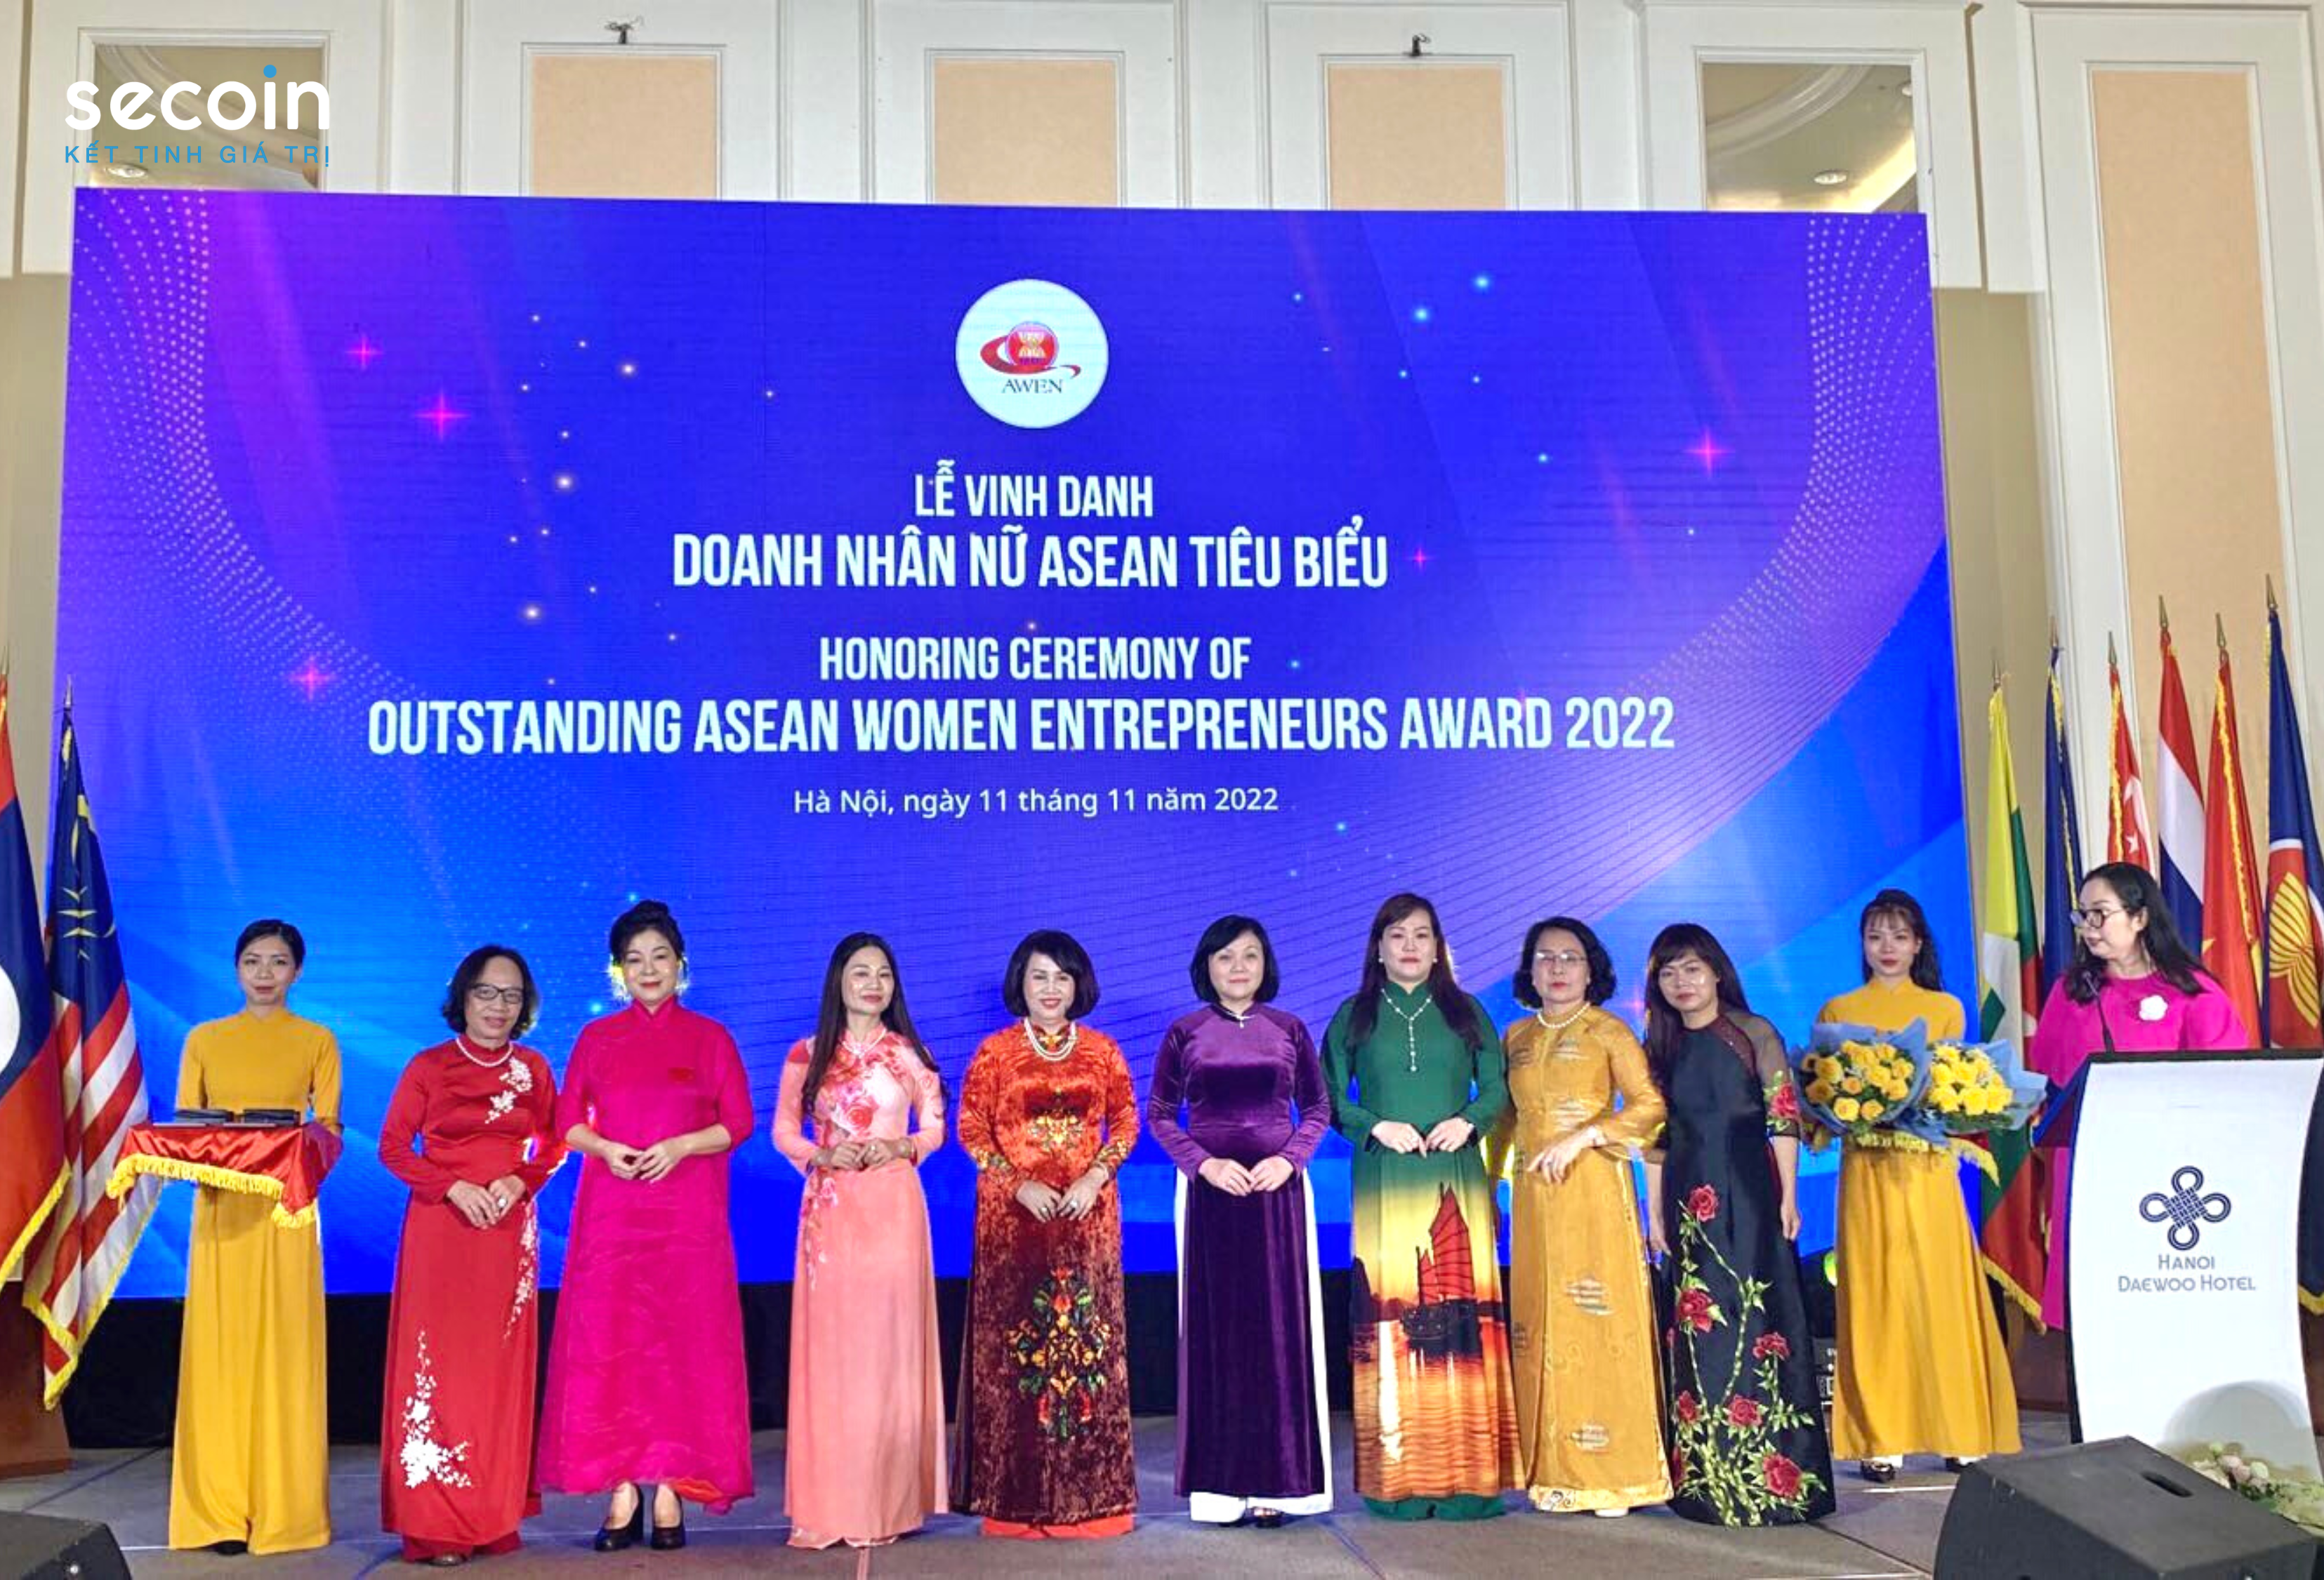 Bà Đinh Hoài Giang – Tổng Giám đốc Secoin được vinh danh “Doanh nhân nữ Asean tiêu biểu 2022”